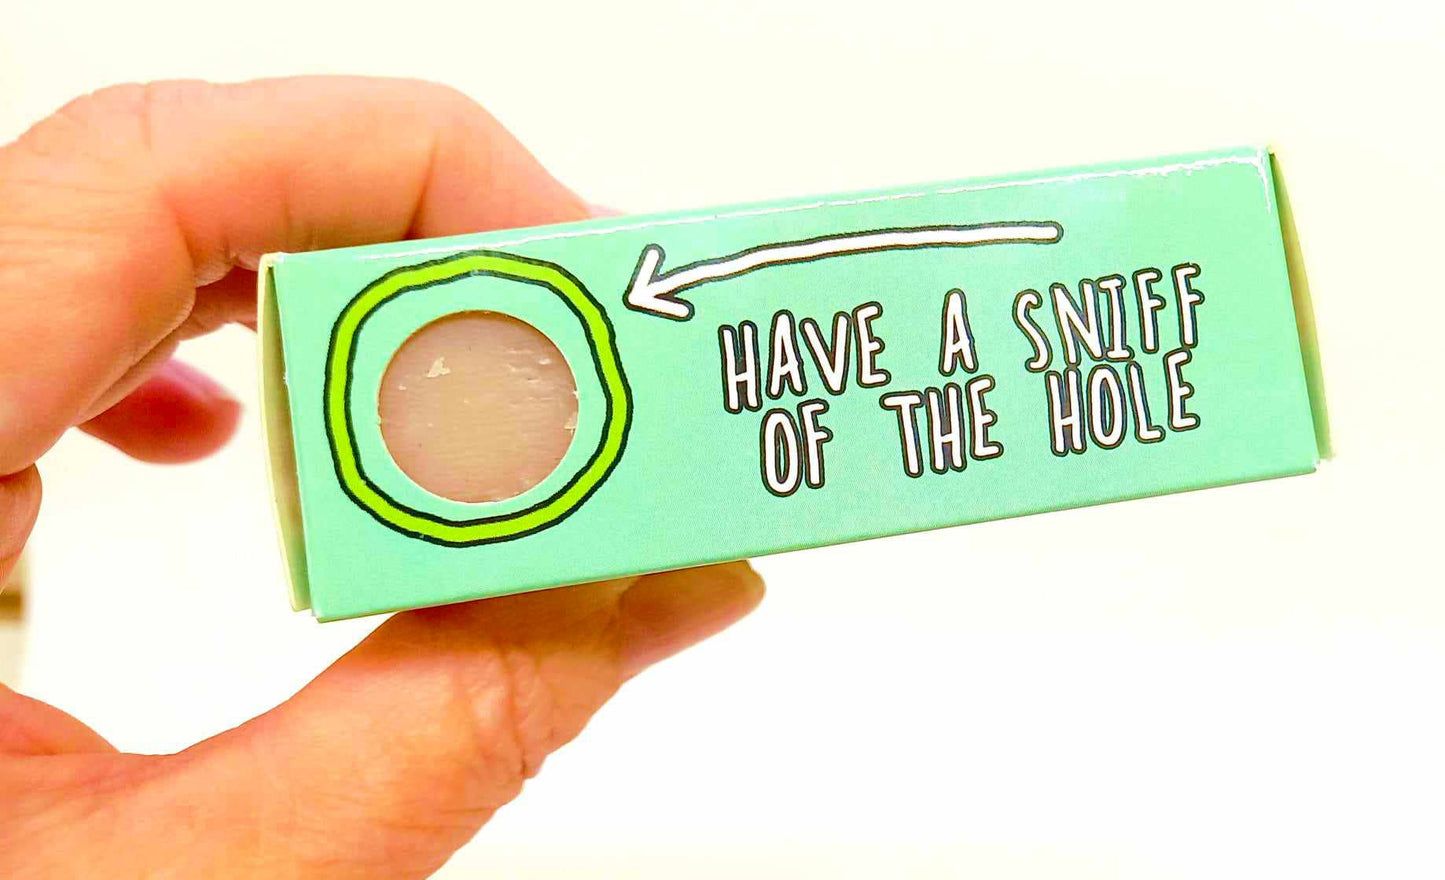 Jingle Balls Soap Bar Funny Rude Novelty Gift